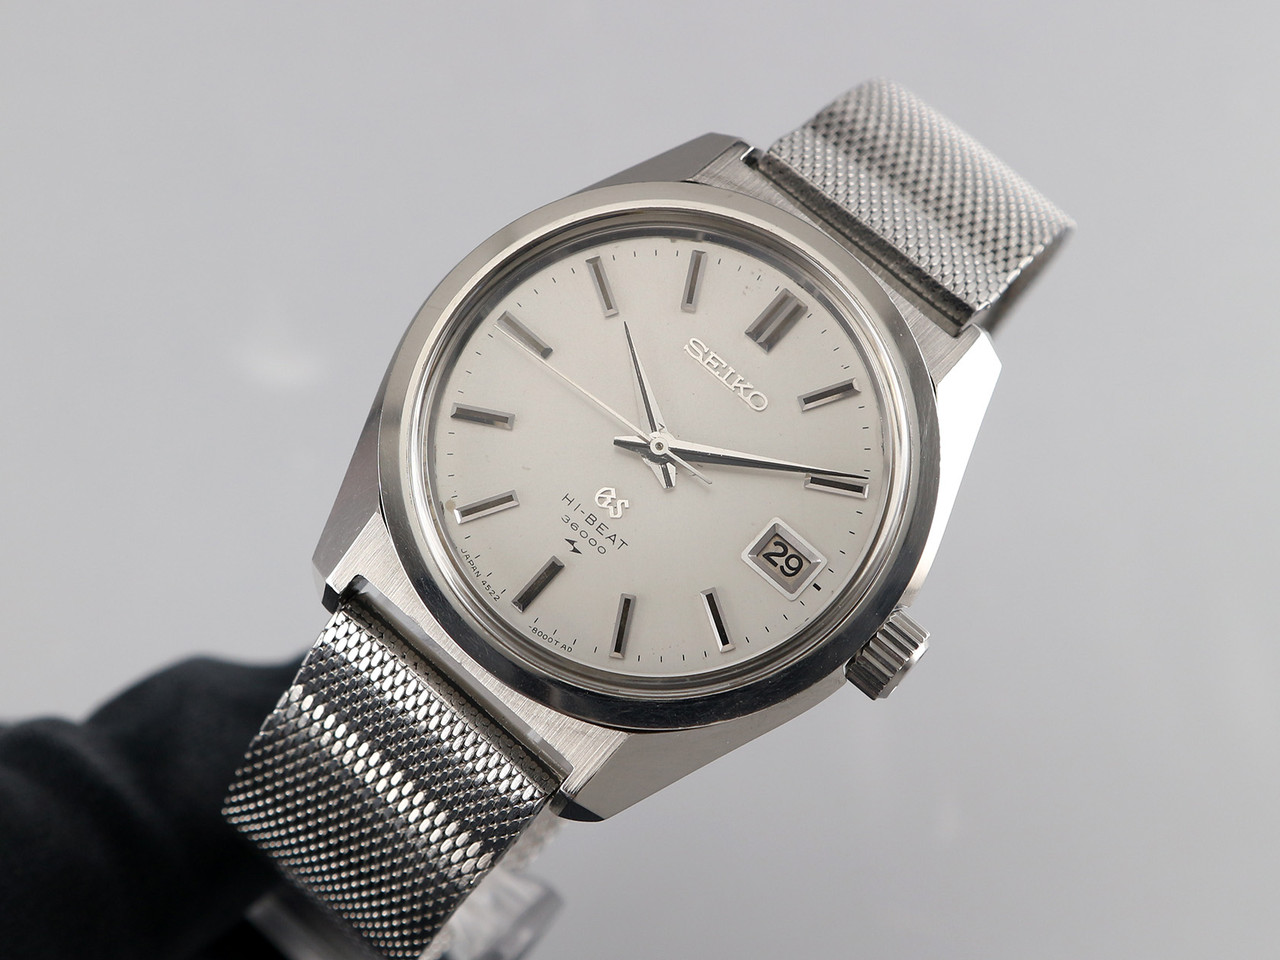 Seiko Grand Seiko GS45 Hi-Beat 36000 bph VWS-1898 - Vintage Watch Services